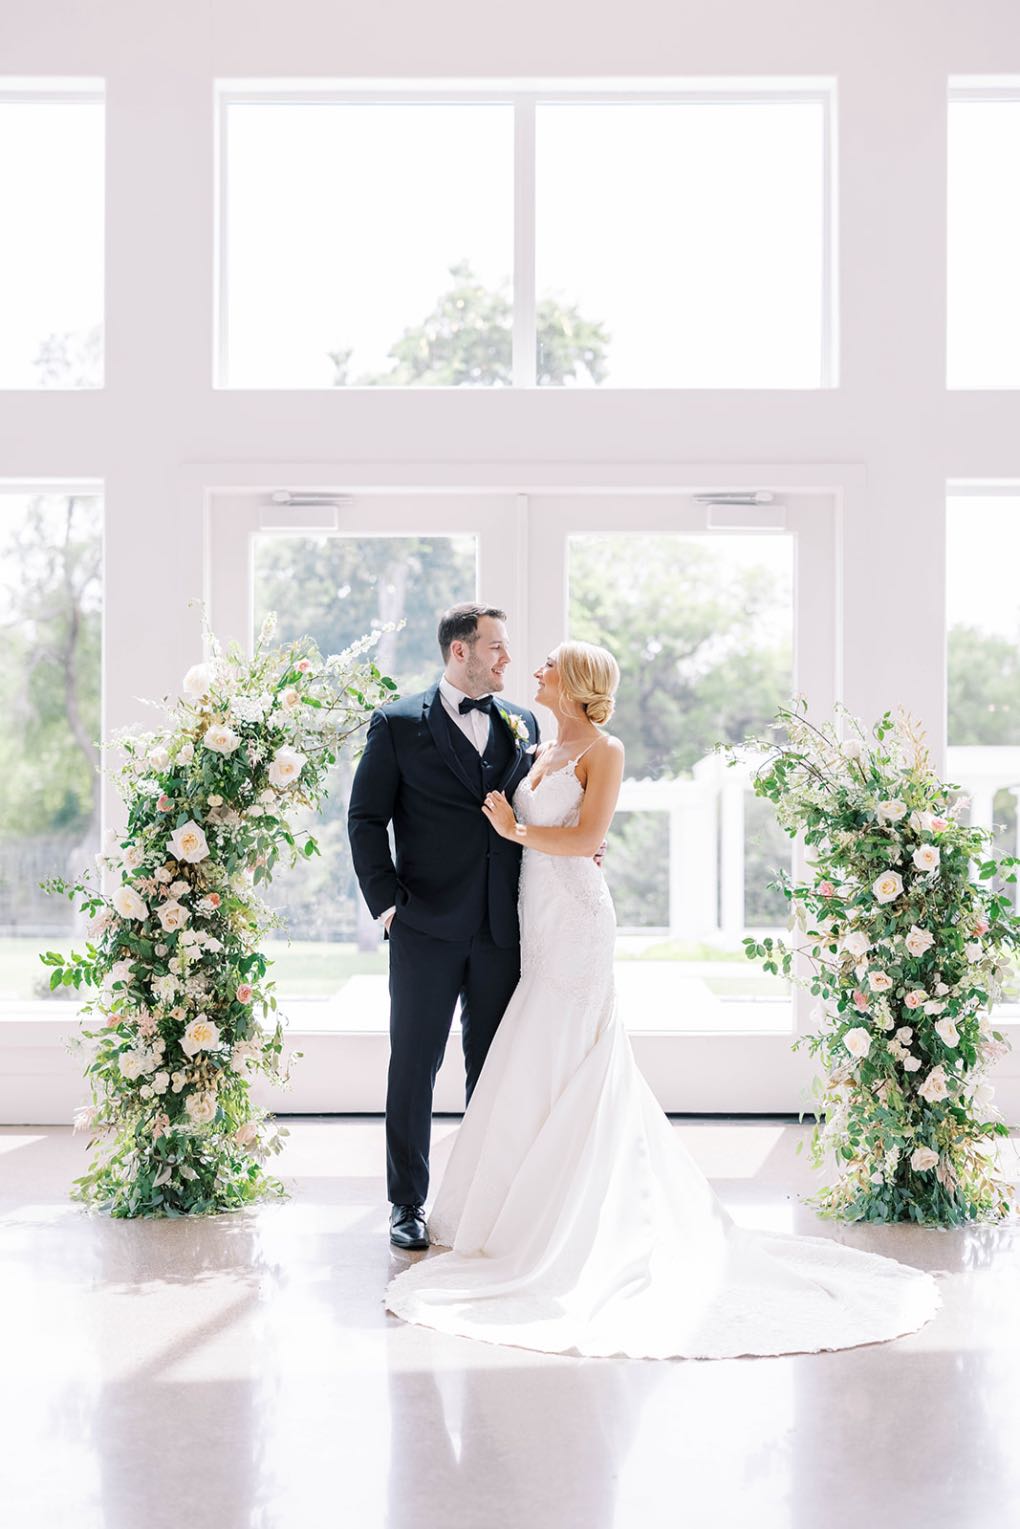 58 Firefly Gardens Wedding Blush Green Wedding Asymmetrical Floral Ceremony Arch 1400x1529 1